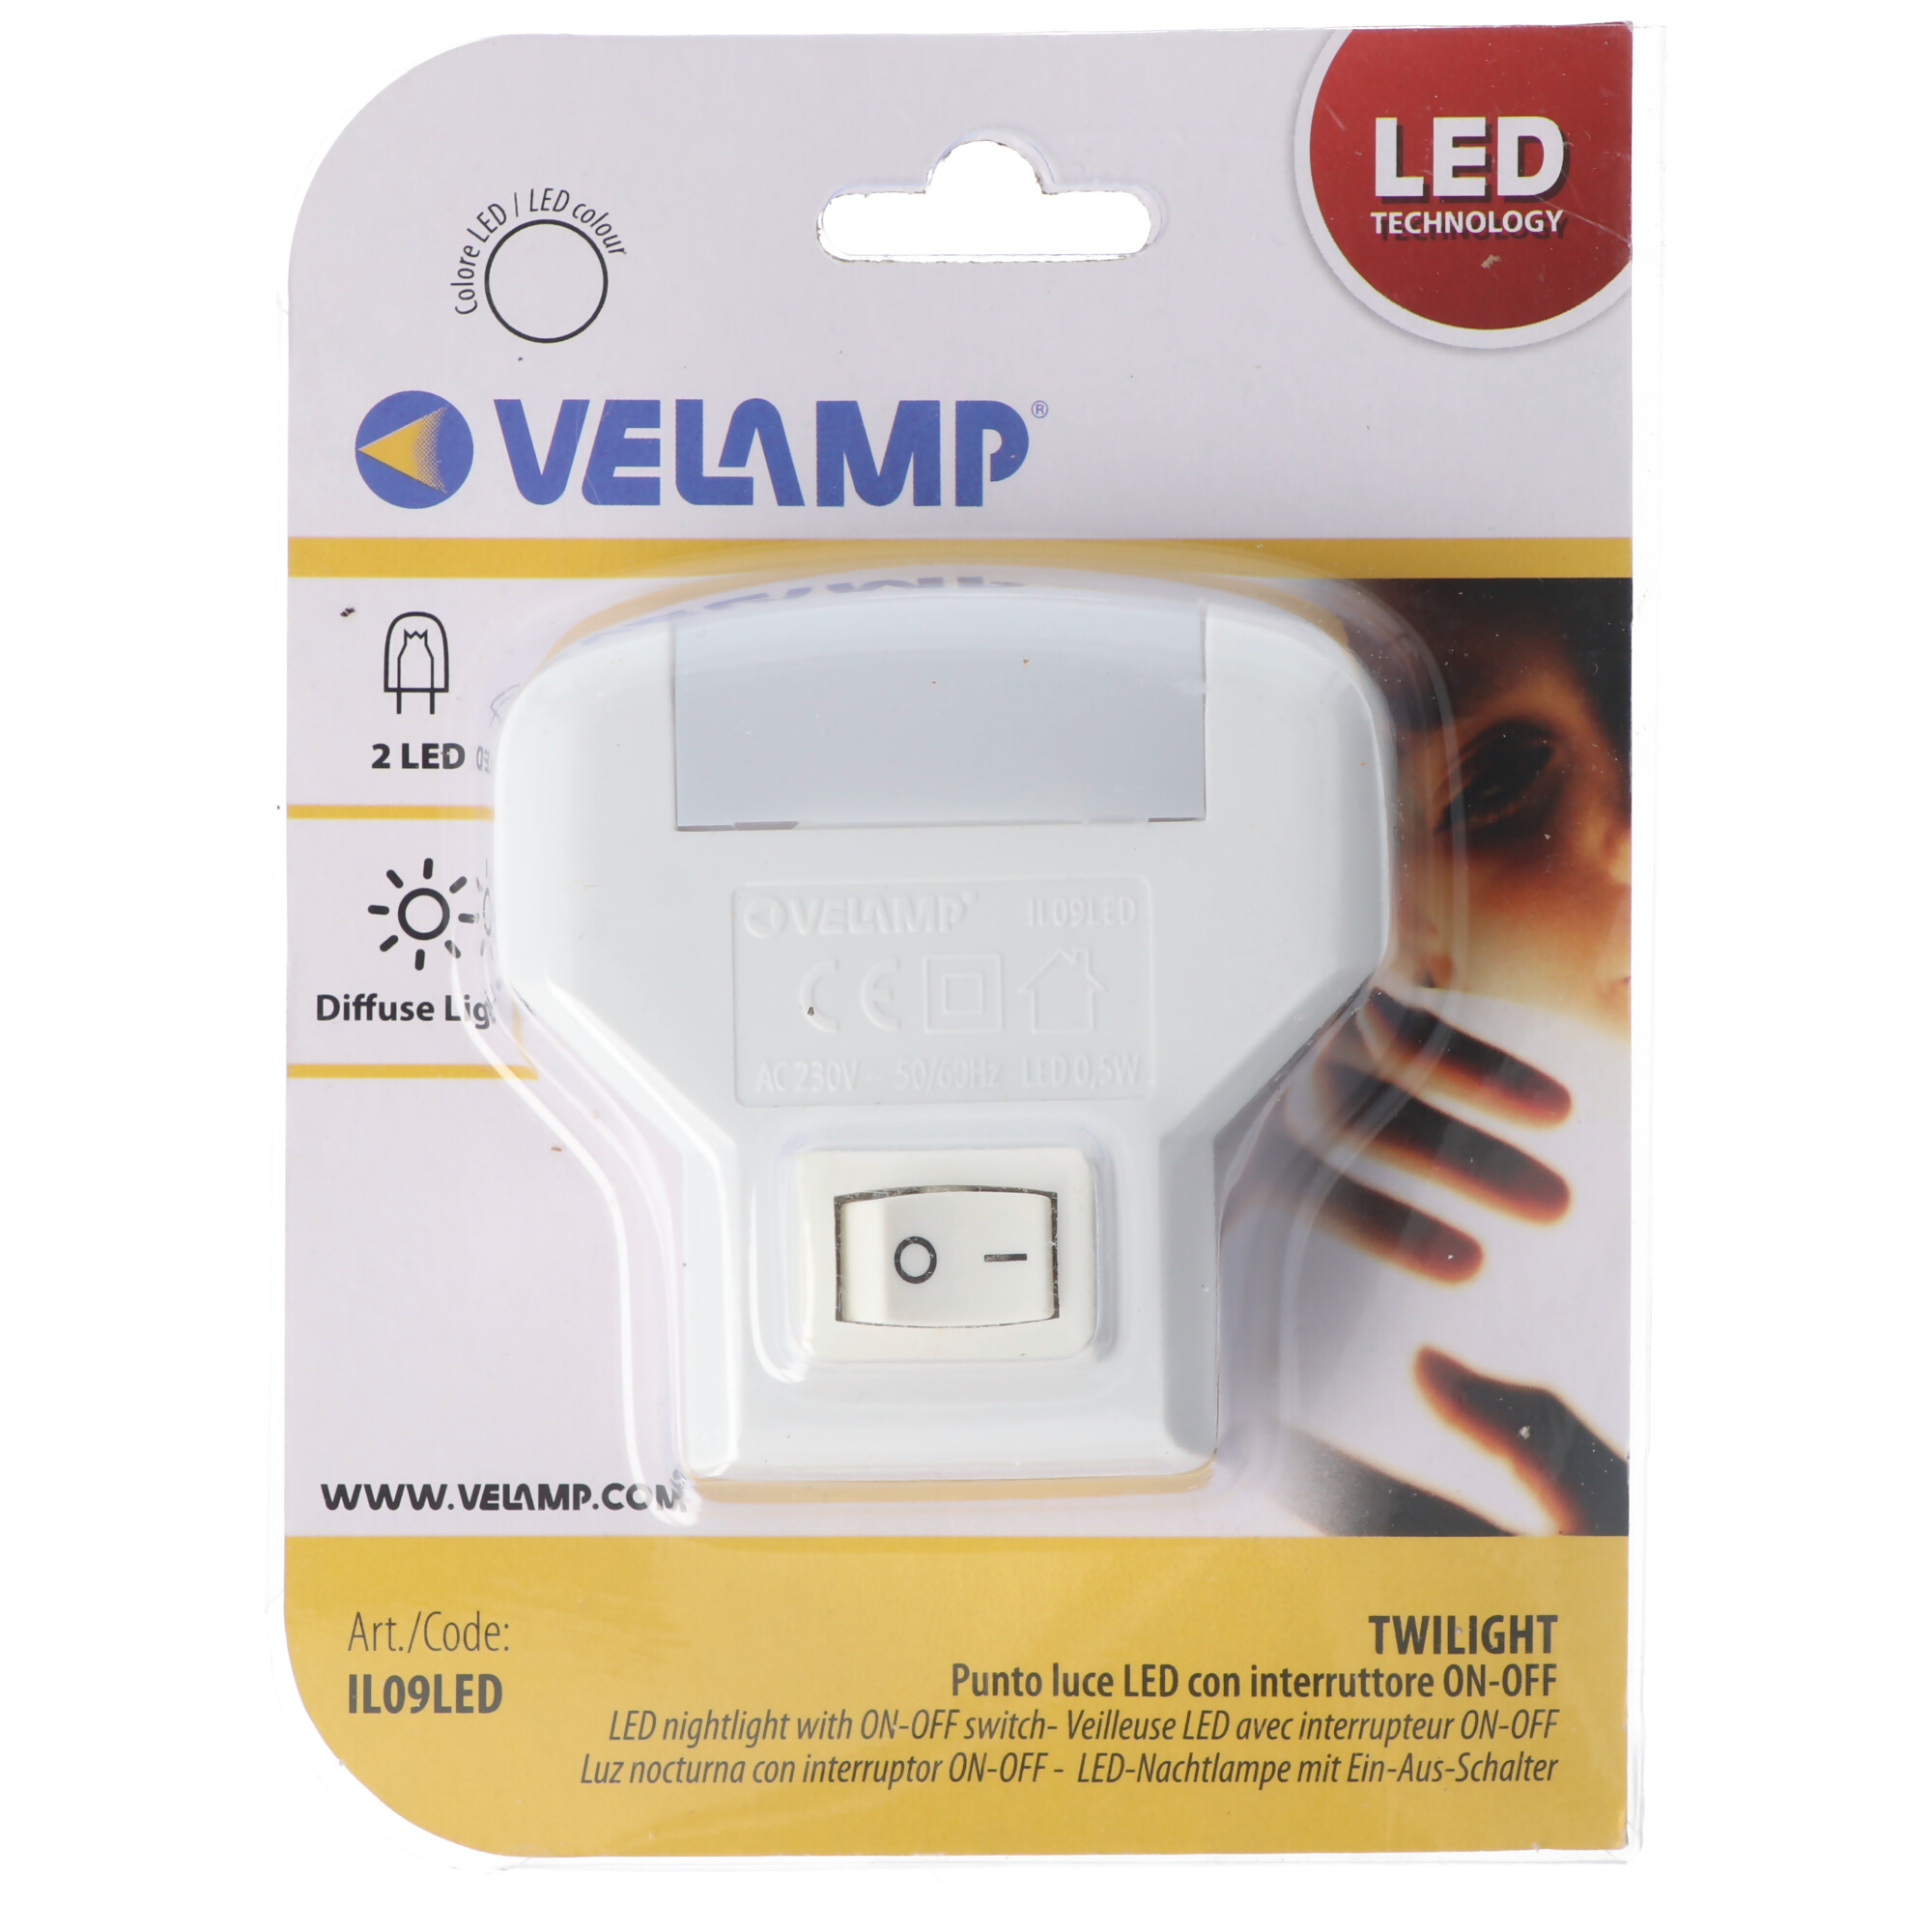 Velamp TWILIGHT, LED-Nachtlicht mit ON/OFF-Schalter, vertikale Buchse, Orientierungslicht mit 2 LEDs